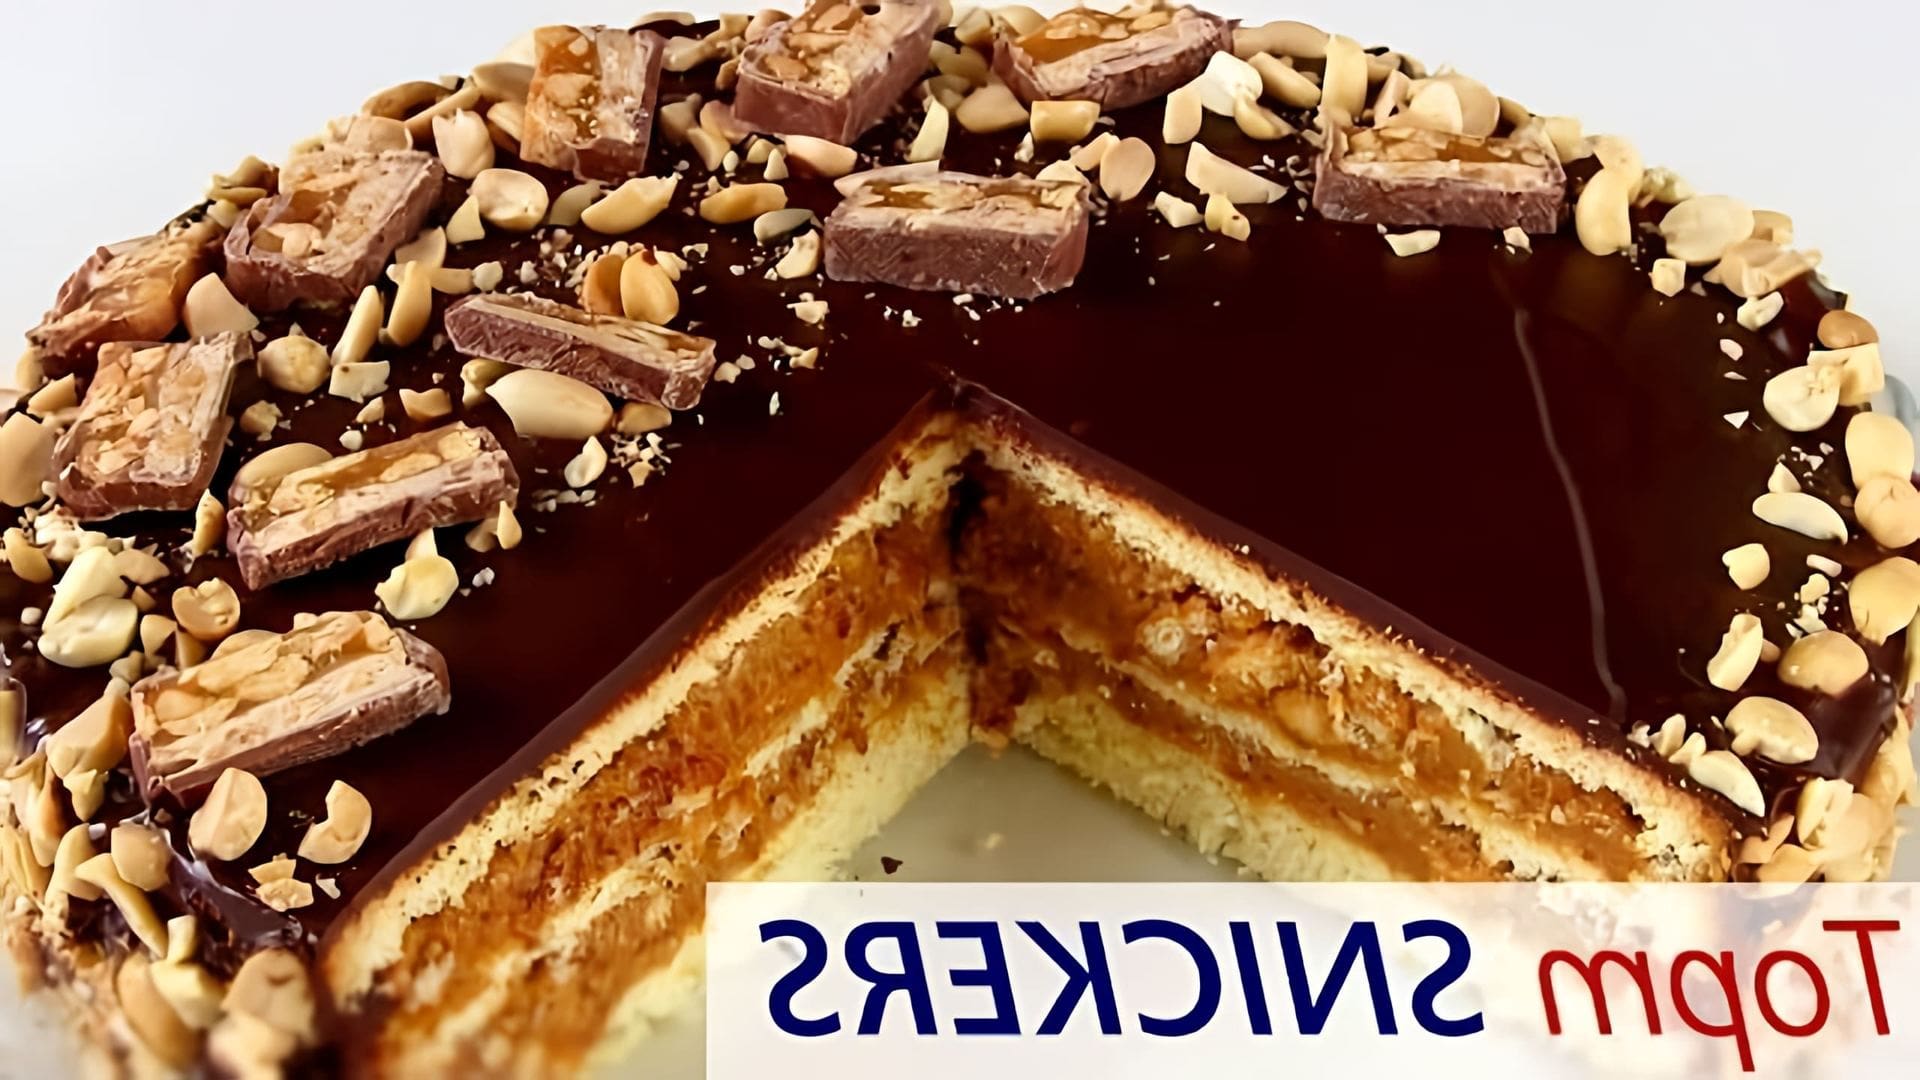 В этом видео демонстрируется рецепт приготовления торта "Сникерс"